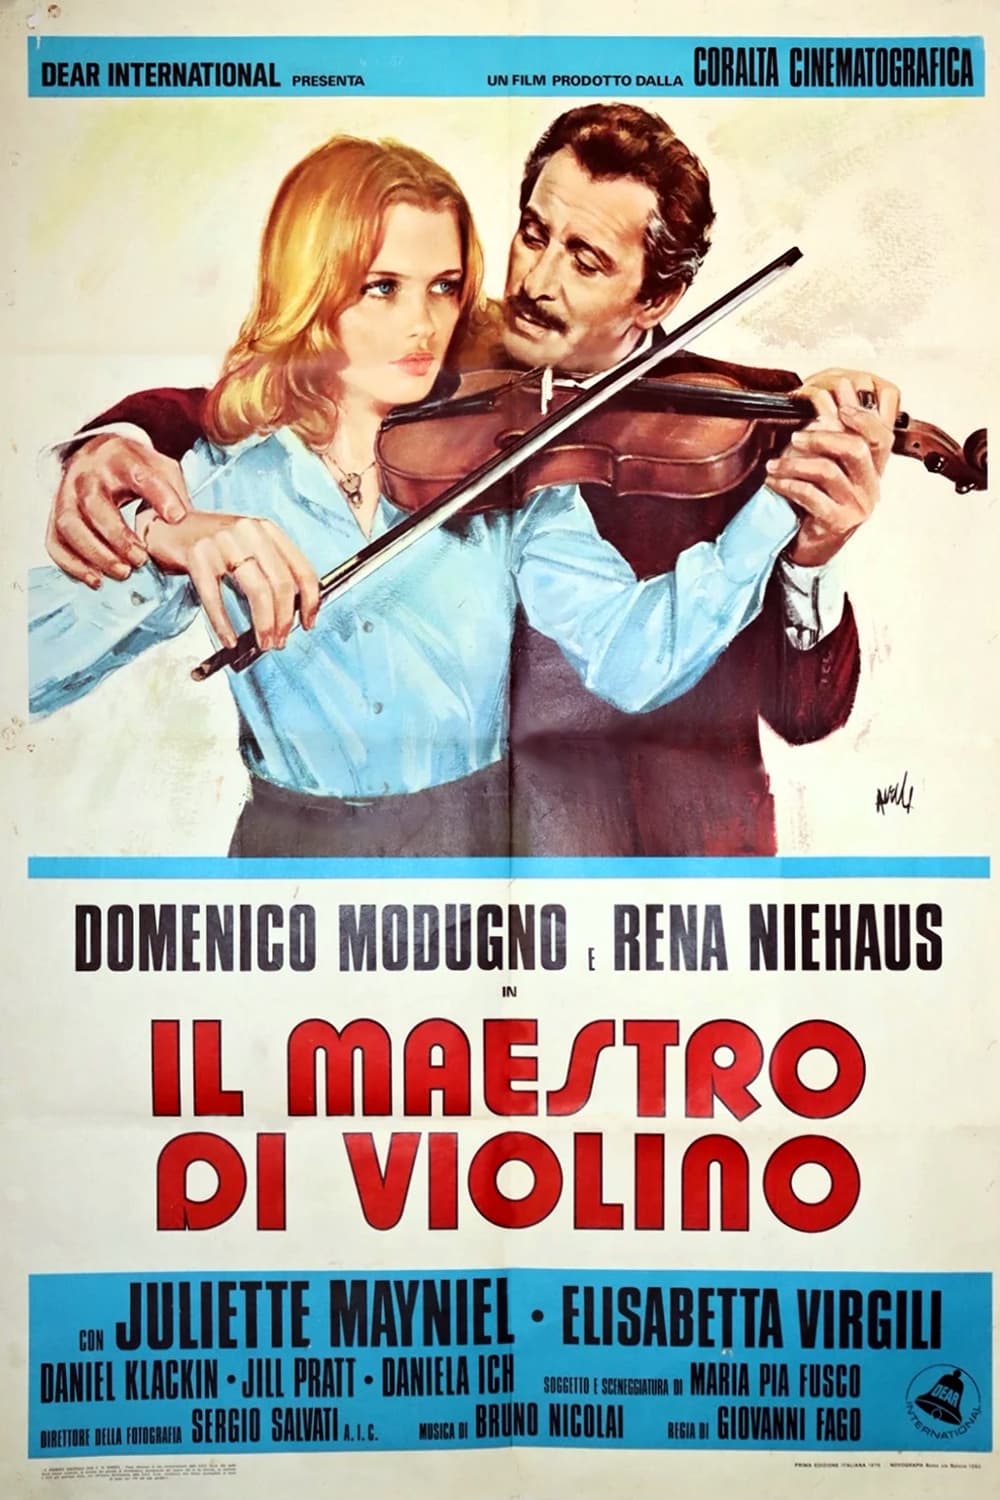 Il maestro di violino (1976)